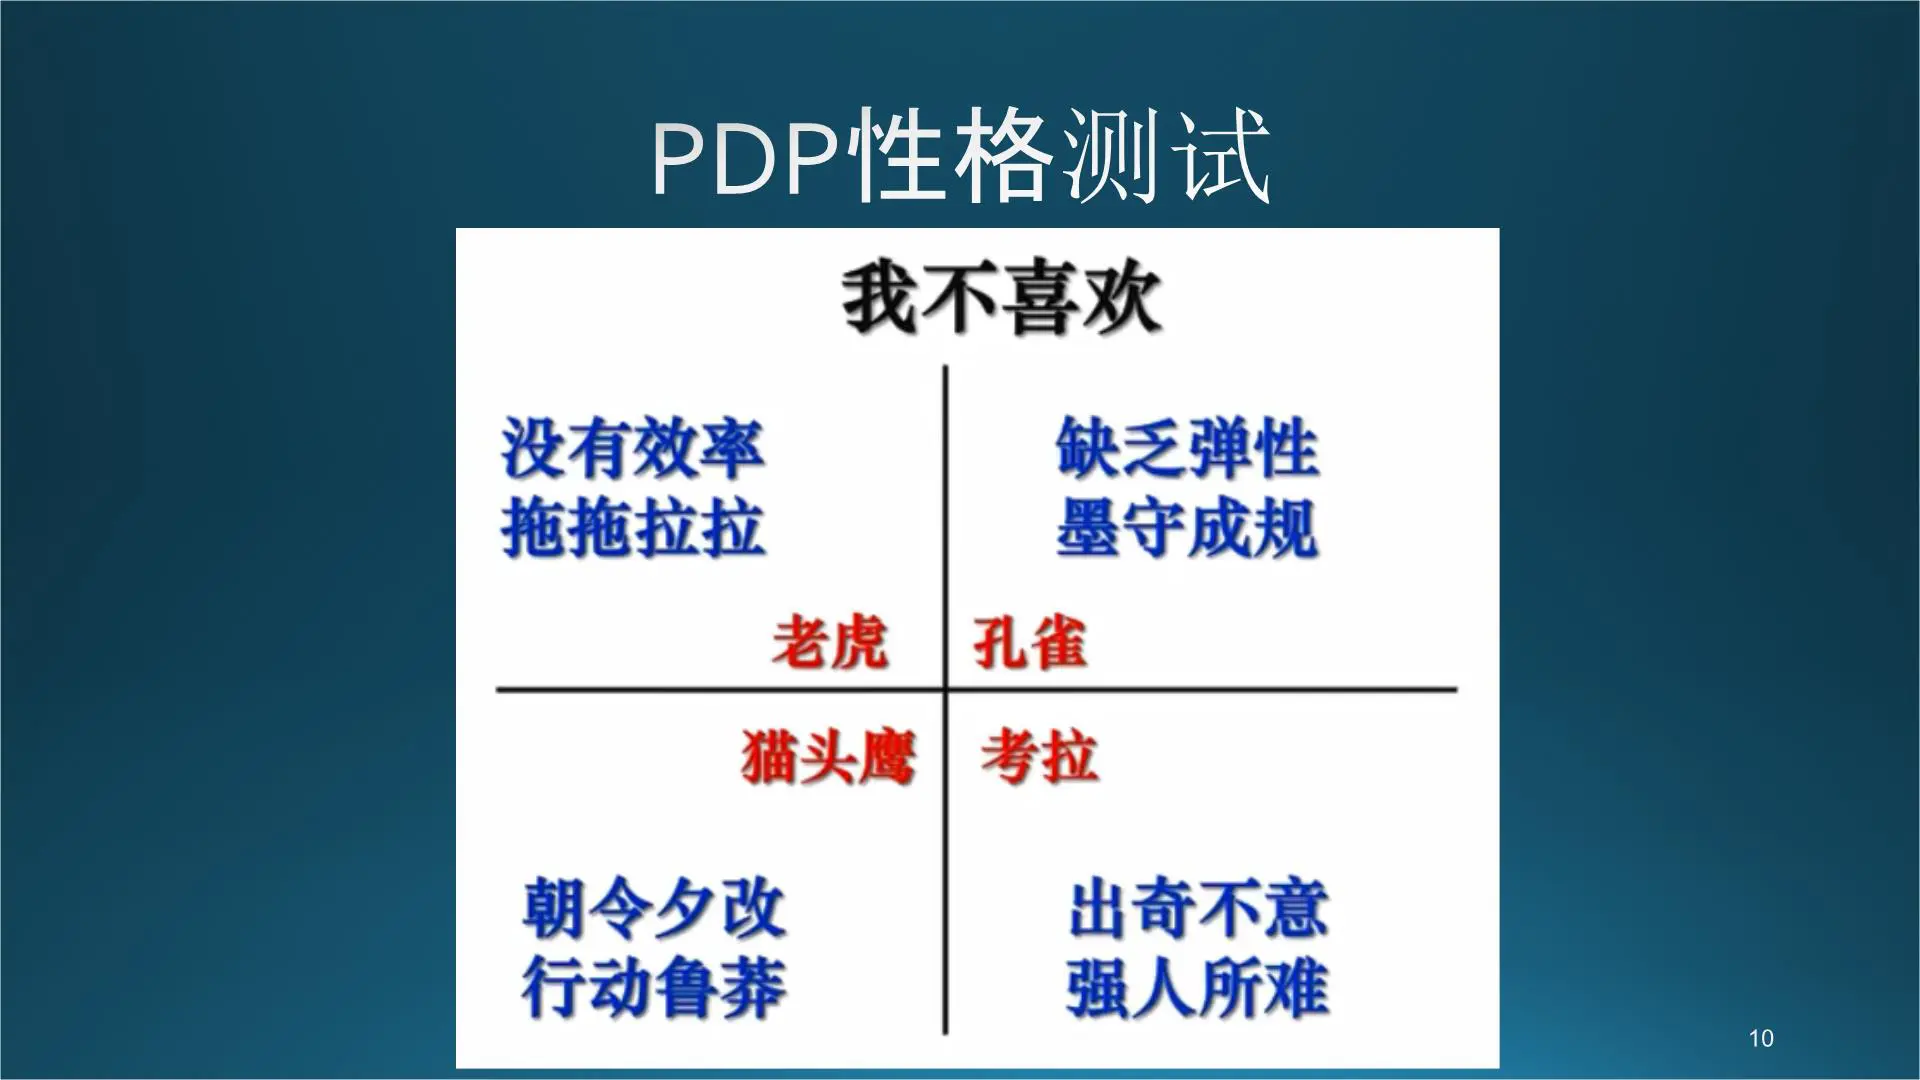 PDP性格测试培训课件插图10